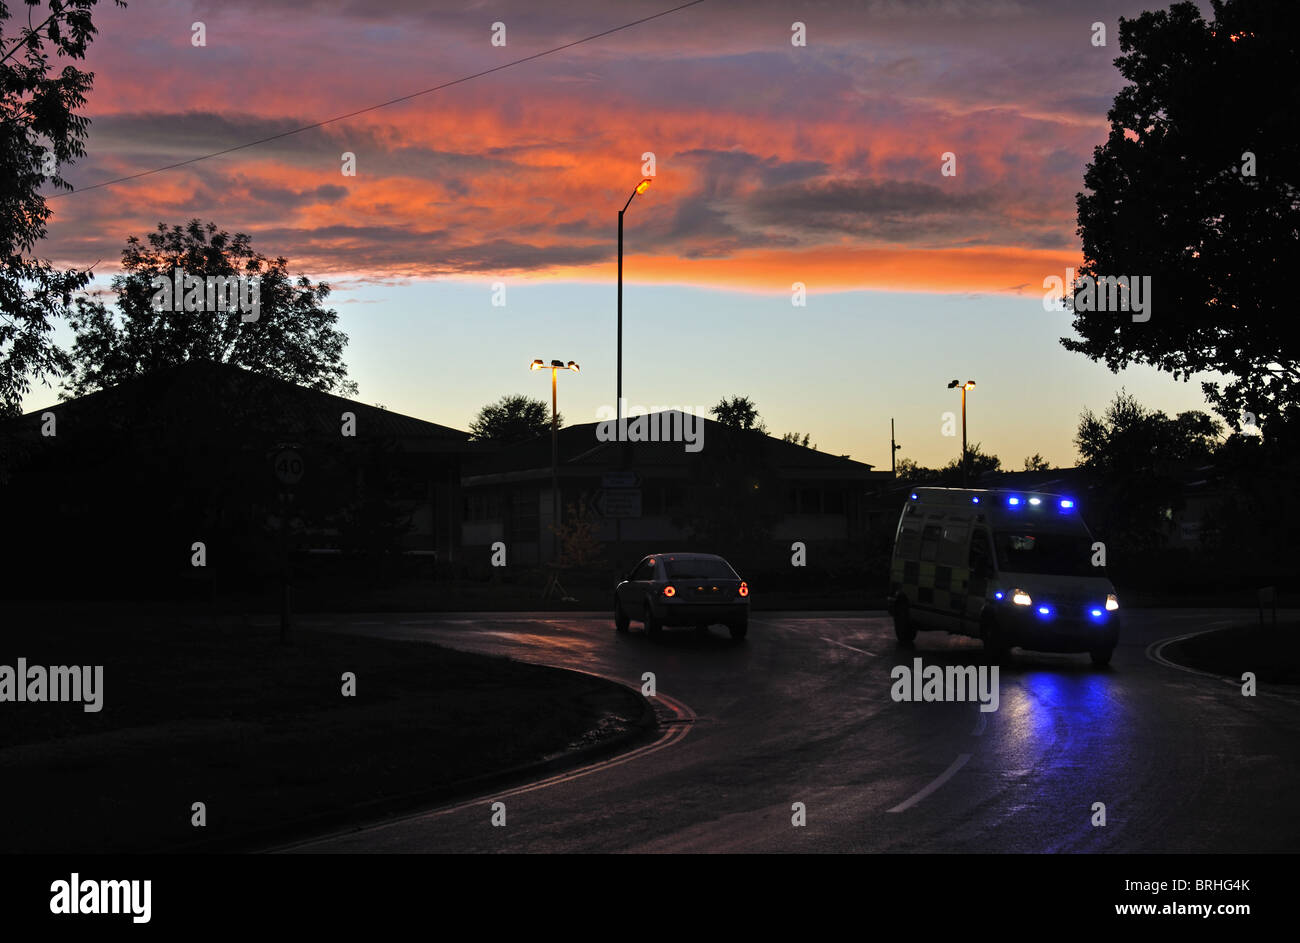 Ambulance on dark road at sunset, UK Stock Photo